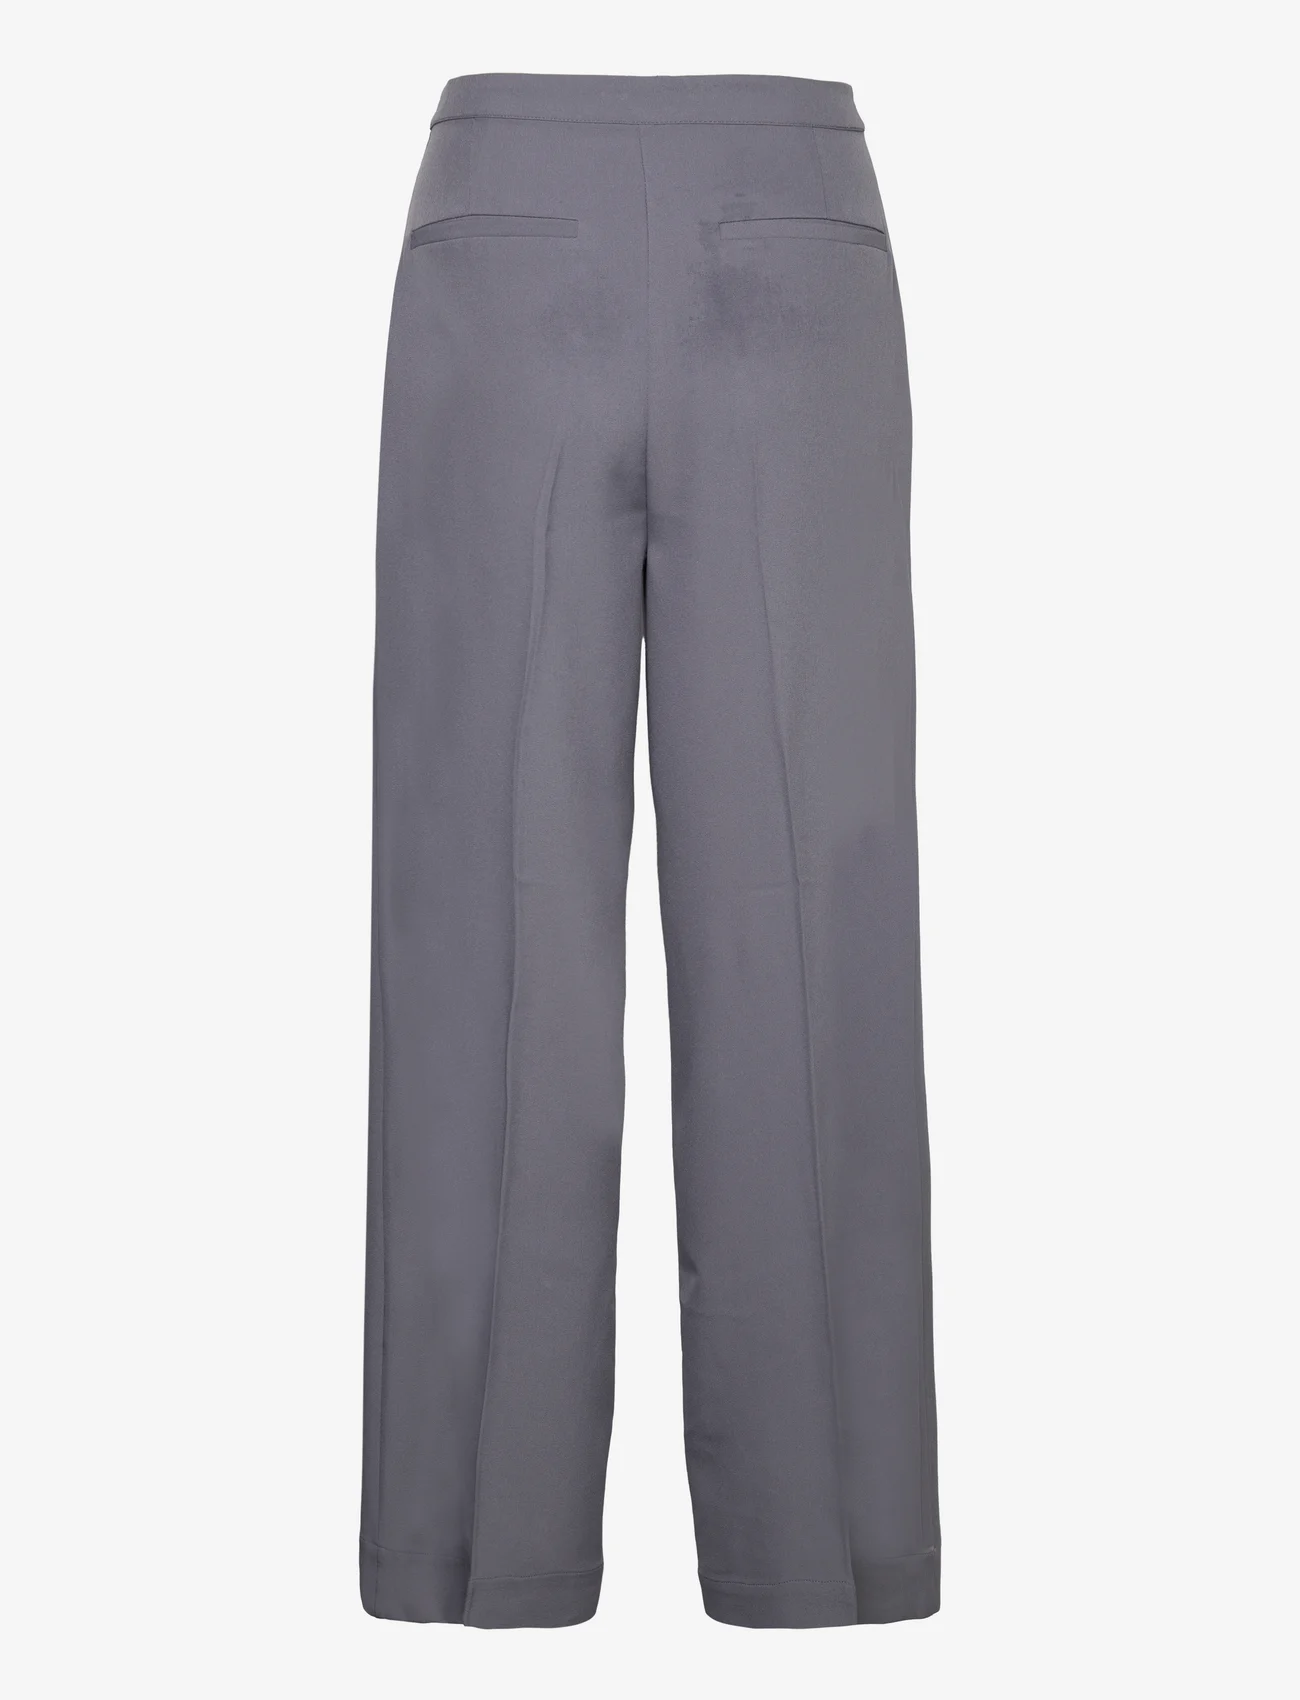 bzr - VibeBZWilde pants - dalykinio stiliaus kelnės - grey - 1